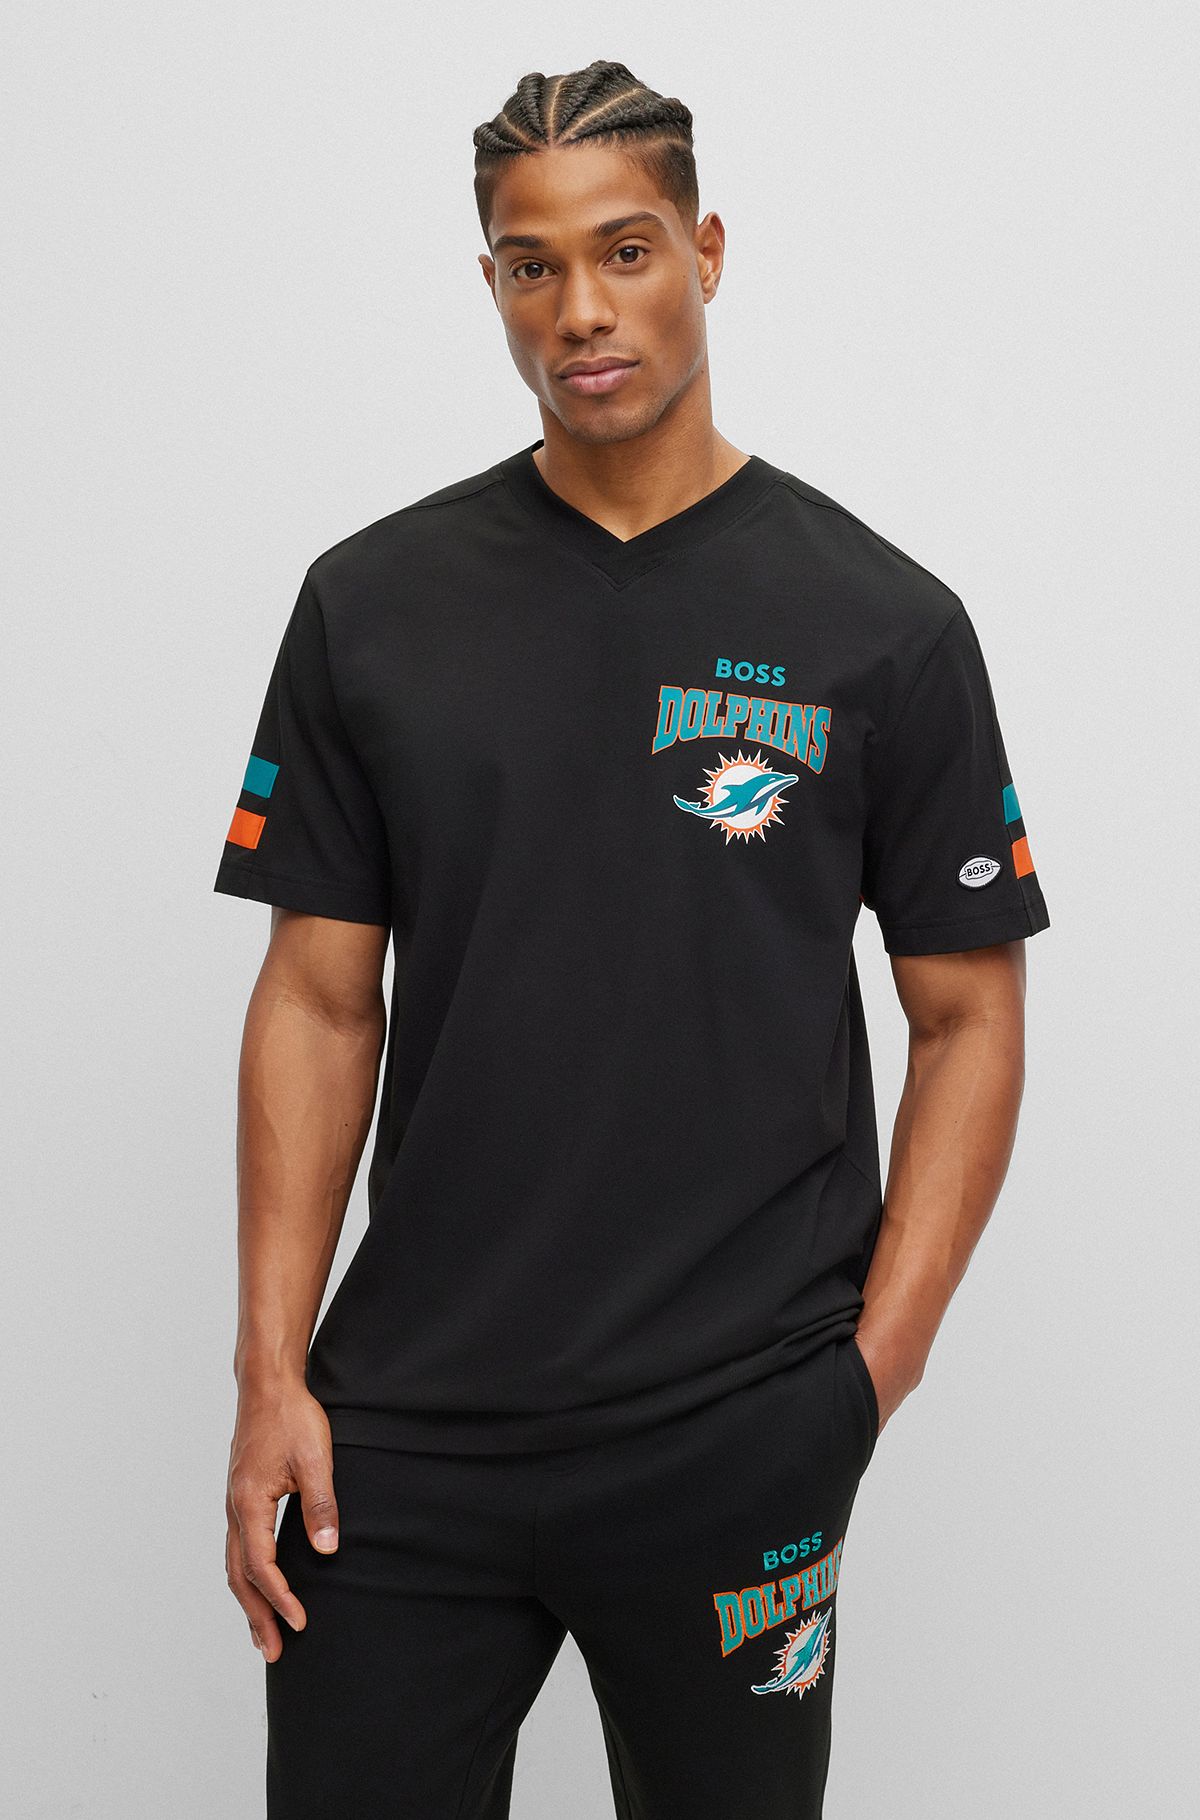 T-shirt en coton mélangé BOSS x NFL avec logo du partenariat, Dolphins